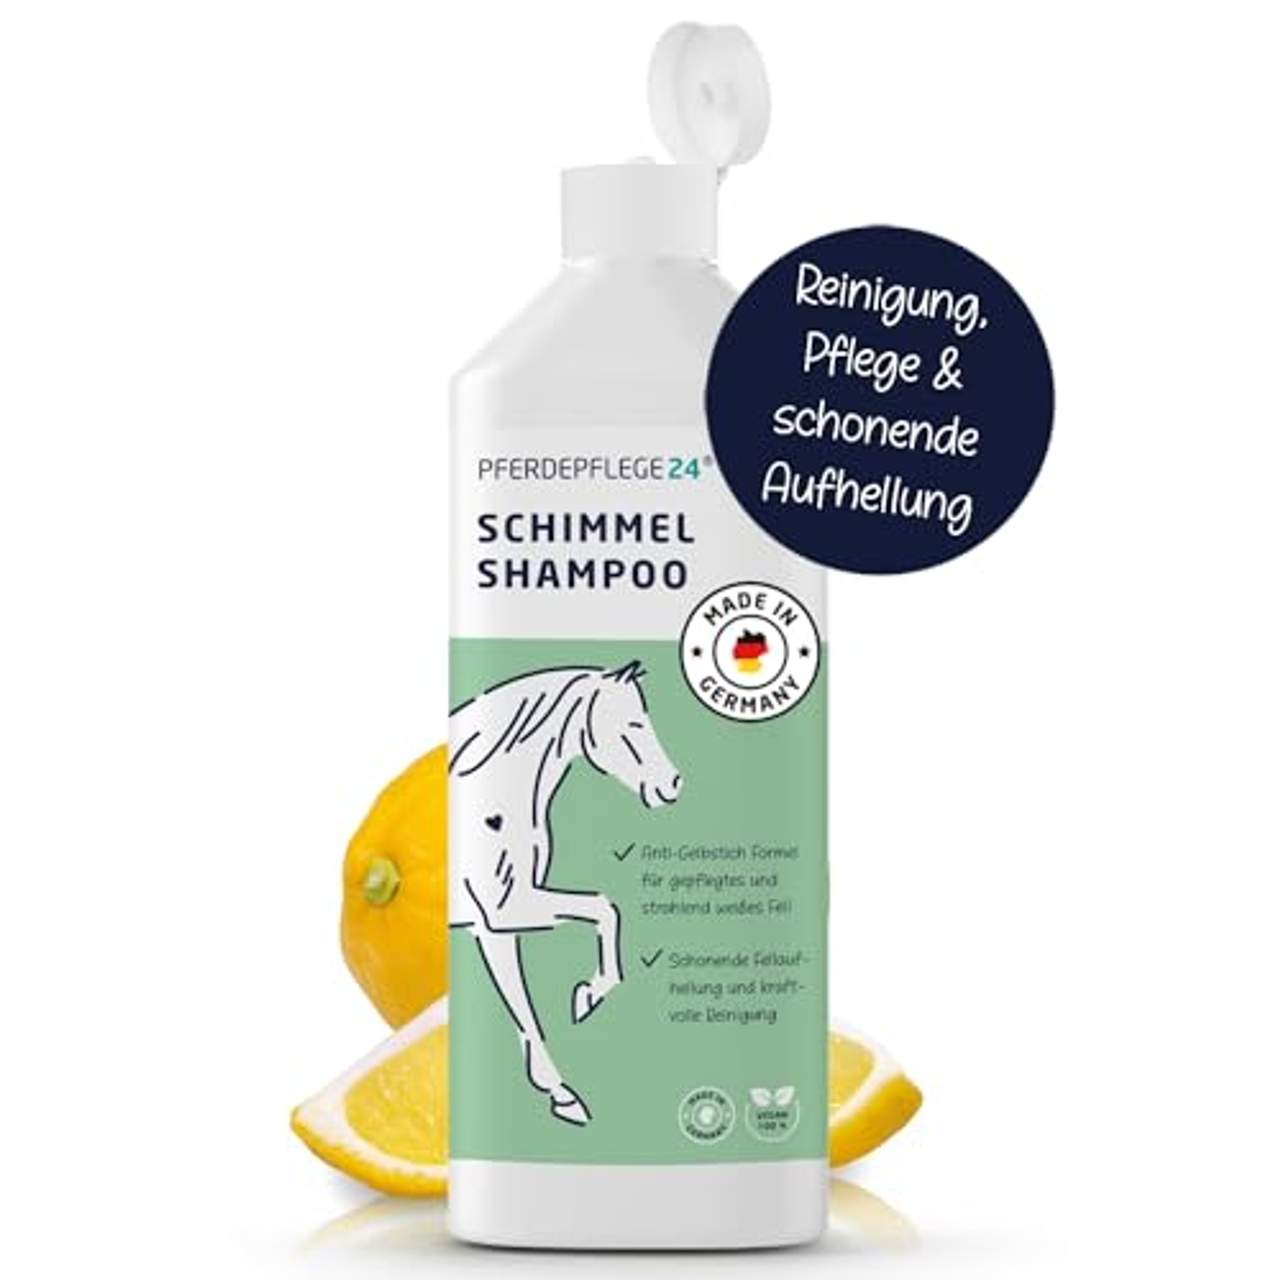 PFERDEPFLEGE24 Schimmel Shampoo für strahlend weißes Fell